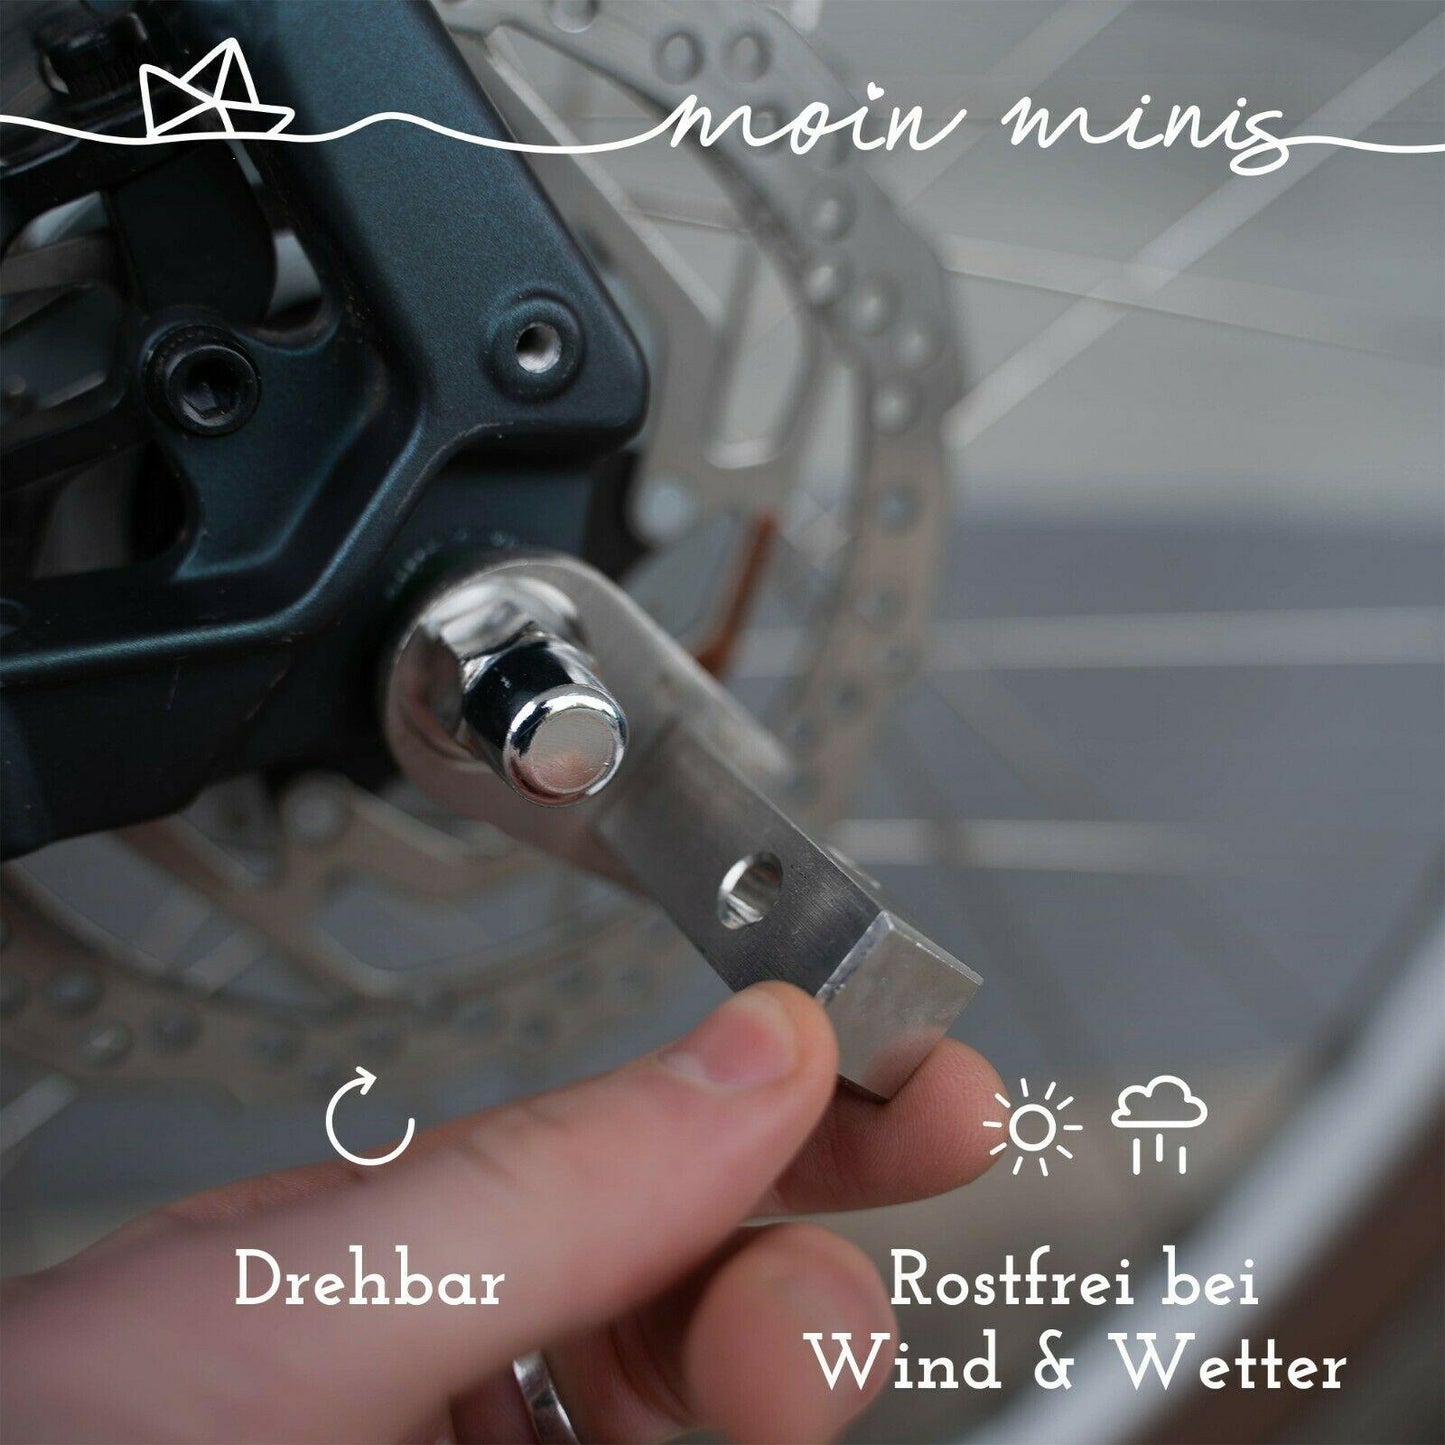 B-Ware: Adapter Croozer Fahrradanhänger bis 2015 Achsadapter Zusatzkupplung - Mixcover - moin minis